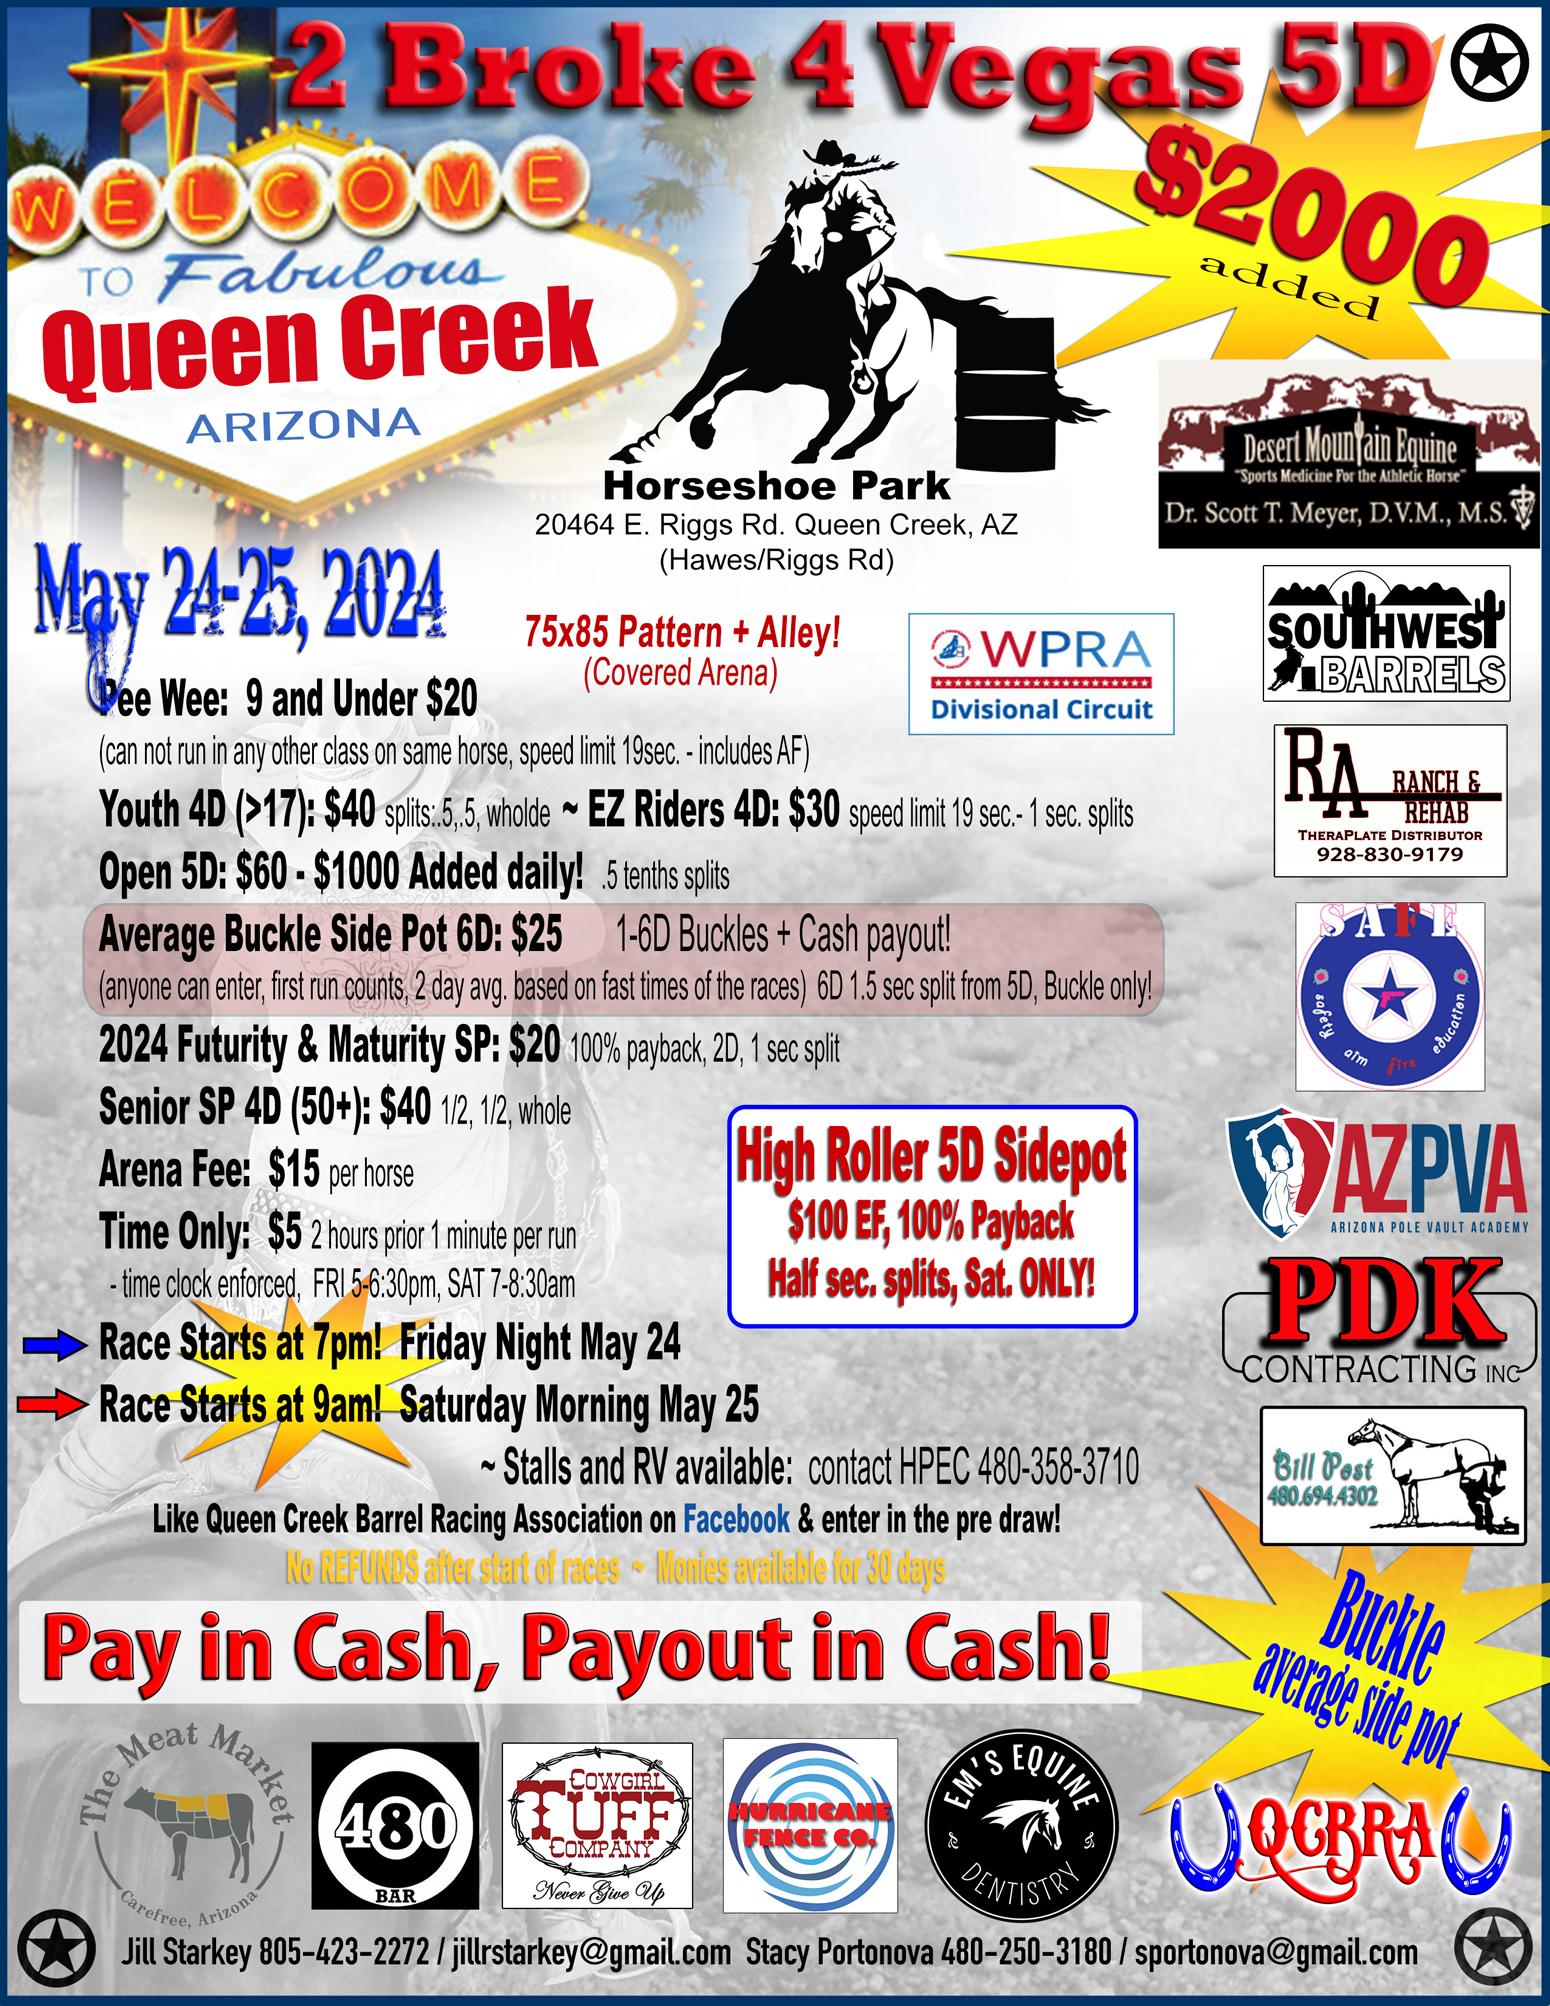 Queen Creek Barrel Racing 2 Broke 4 Vegas Jackpot